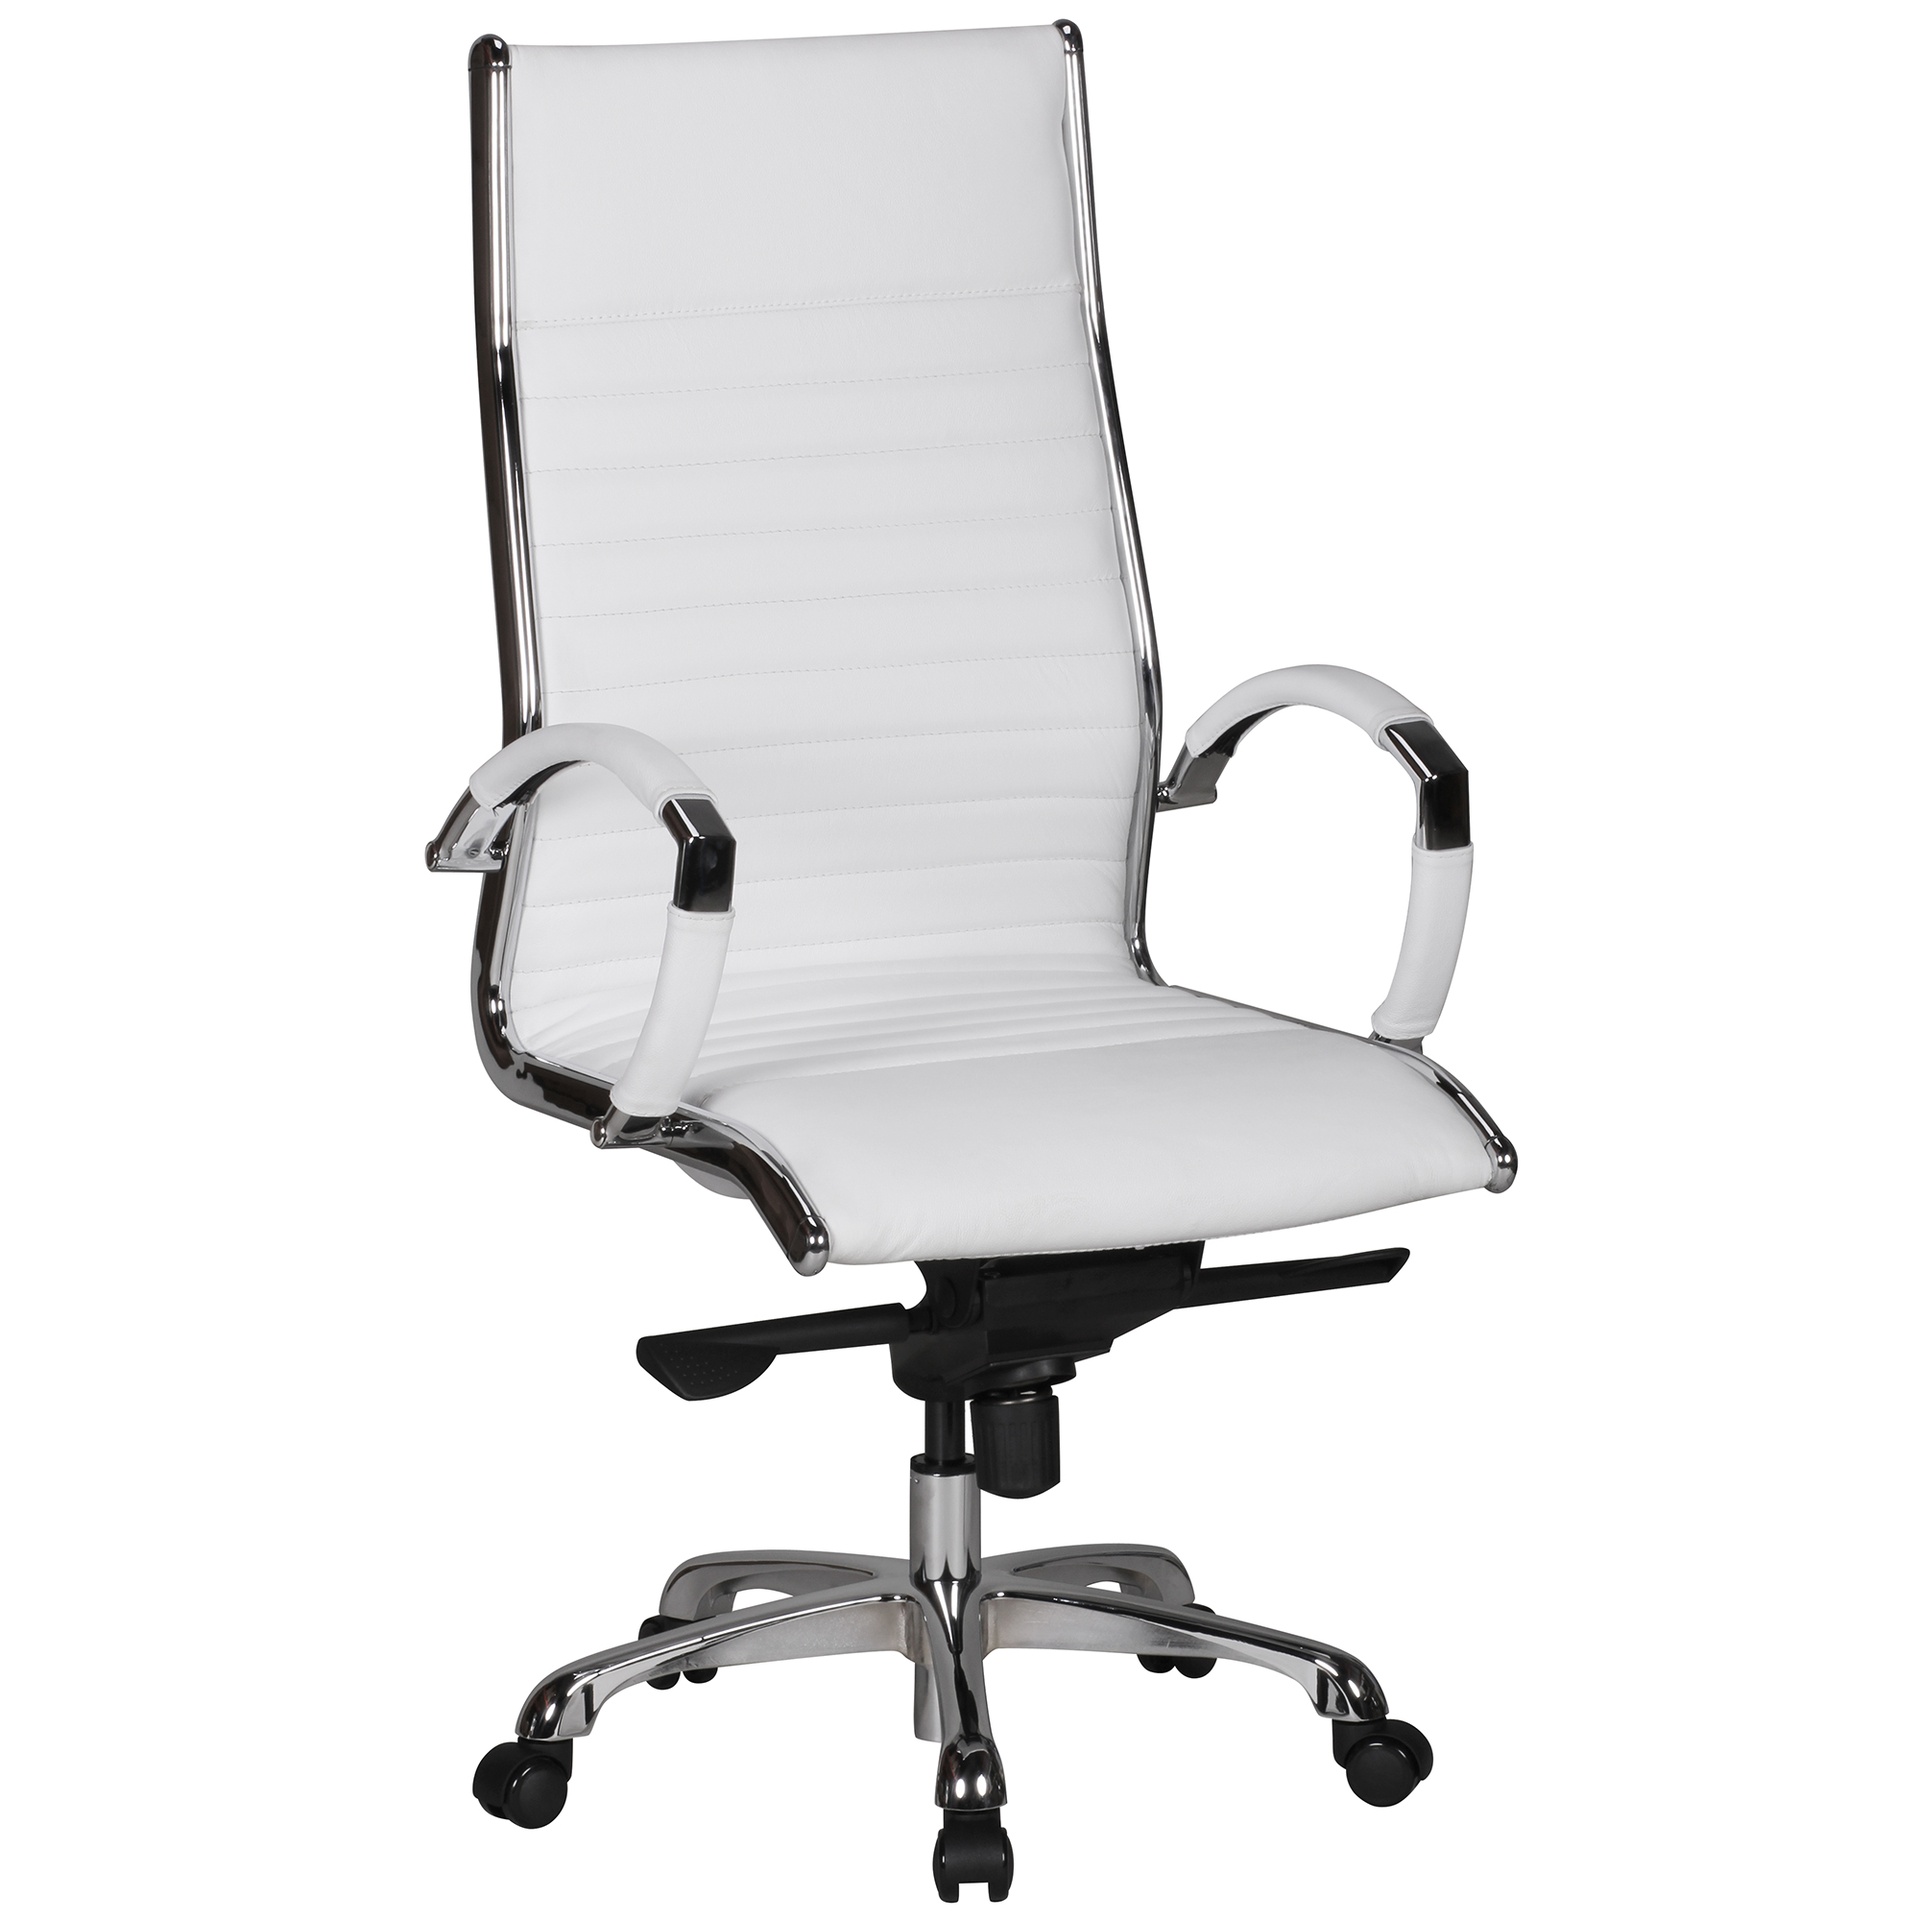 [A09441] Chaise de bureau Salzburg 1 revêtement cuir véritable blanc